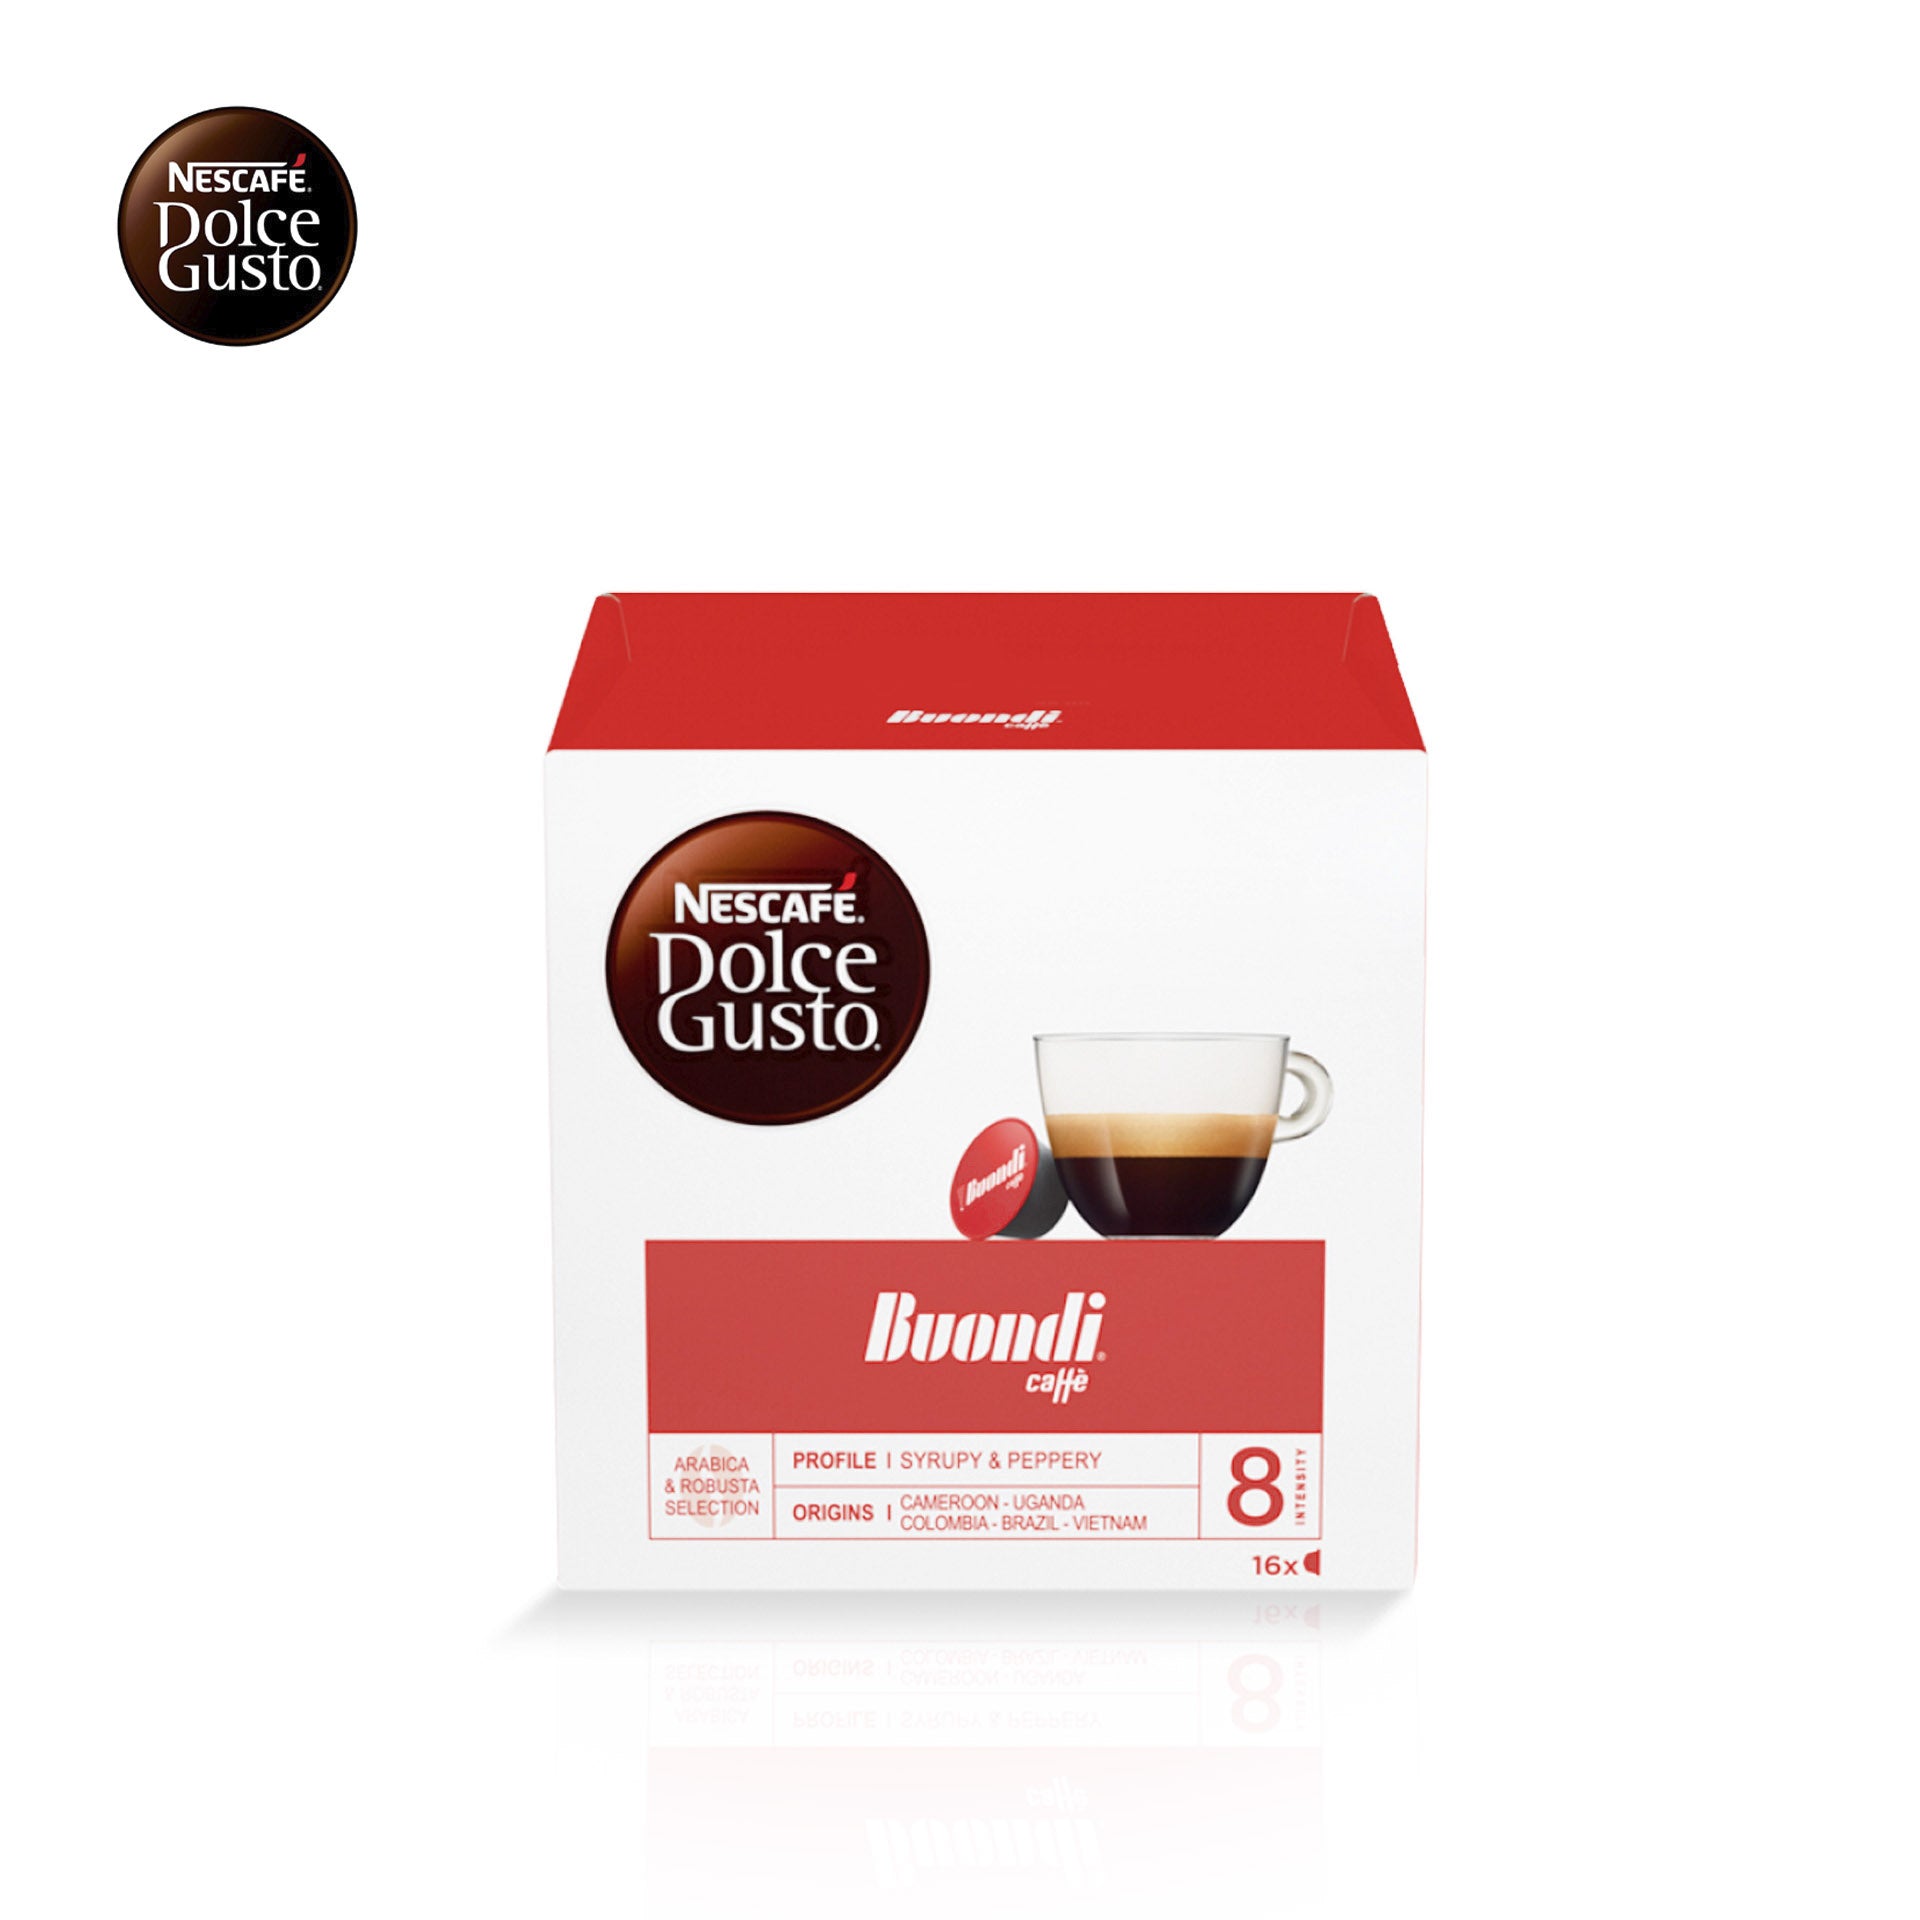 NESCAFE DOLCE GUSTO BUONDI Portuguese Coffee 48 Capsules